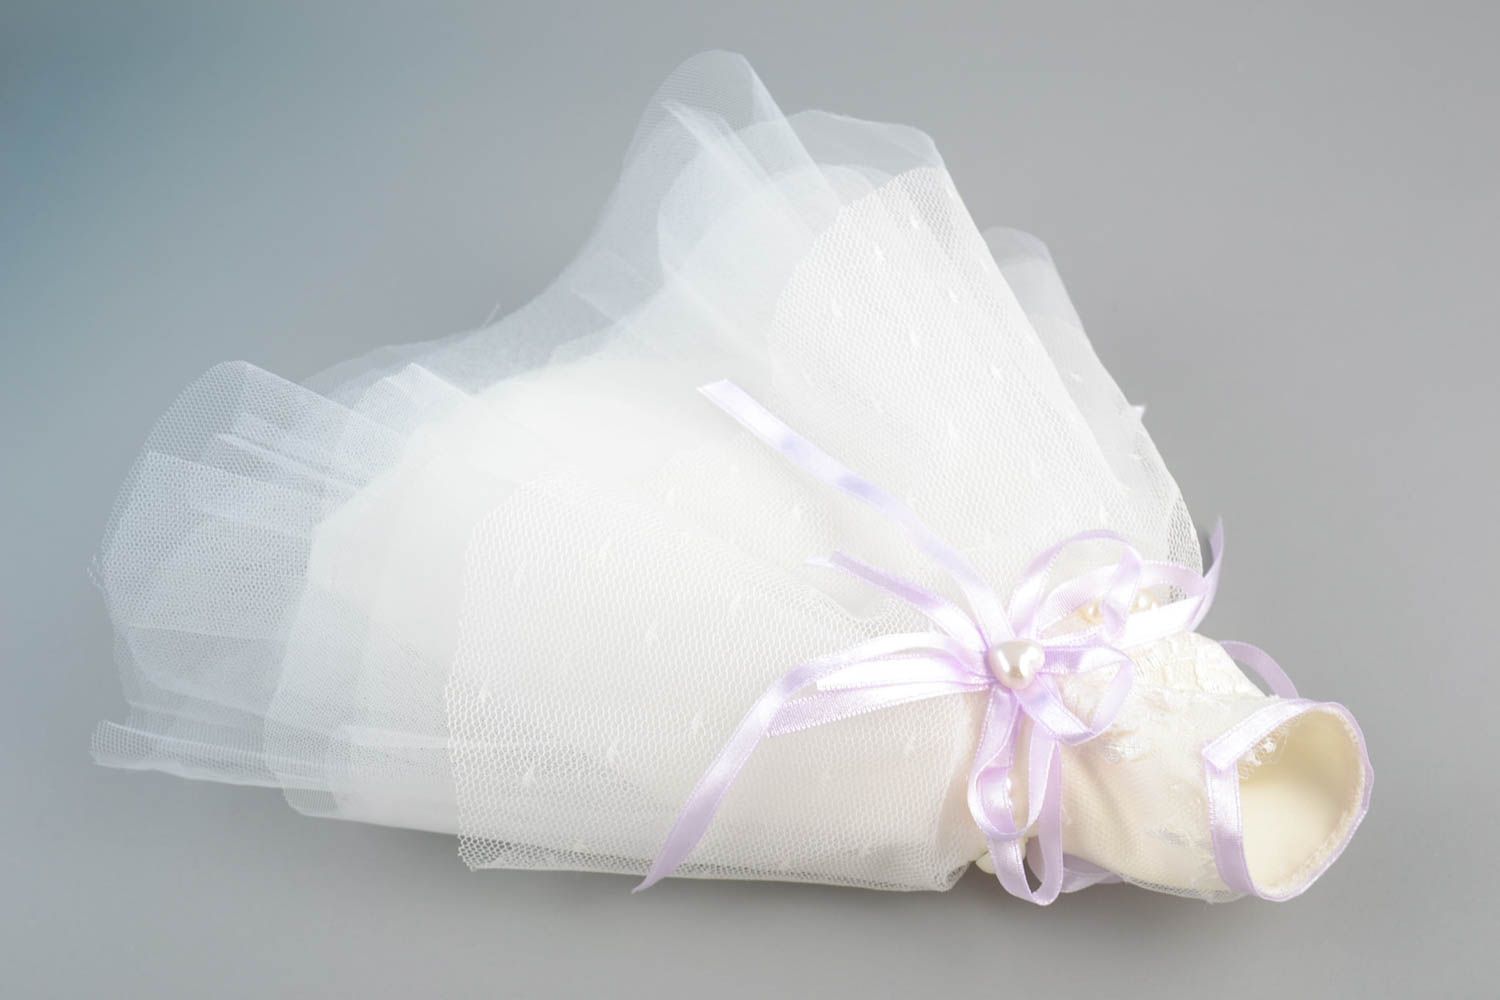 Одежда невесты на бутылку шампанского белая с сиреневым красивая ручной работы фото 3